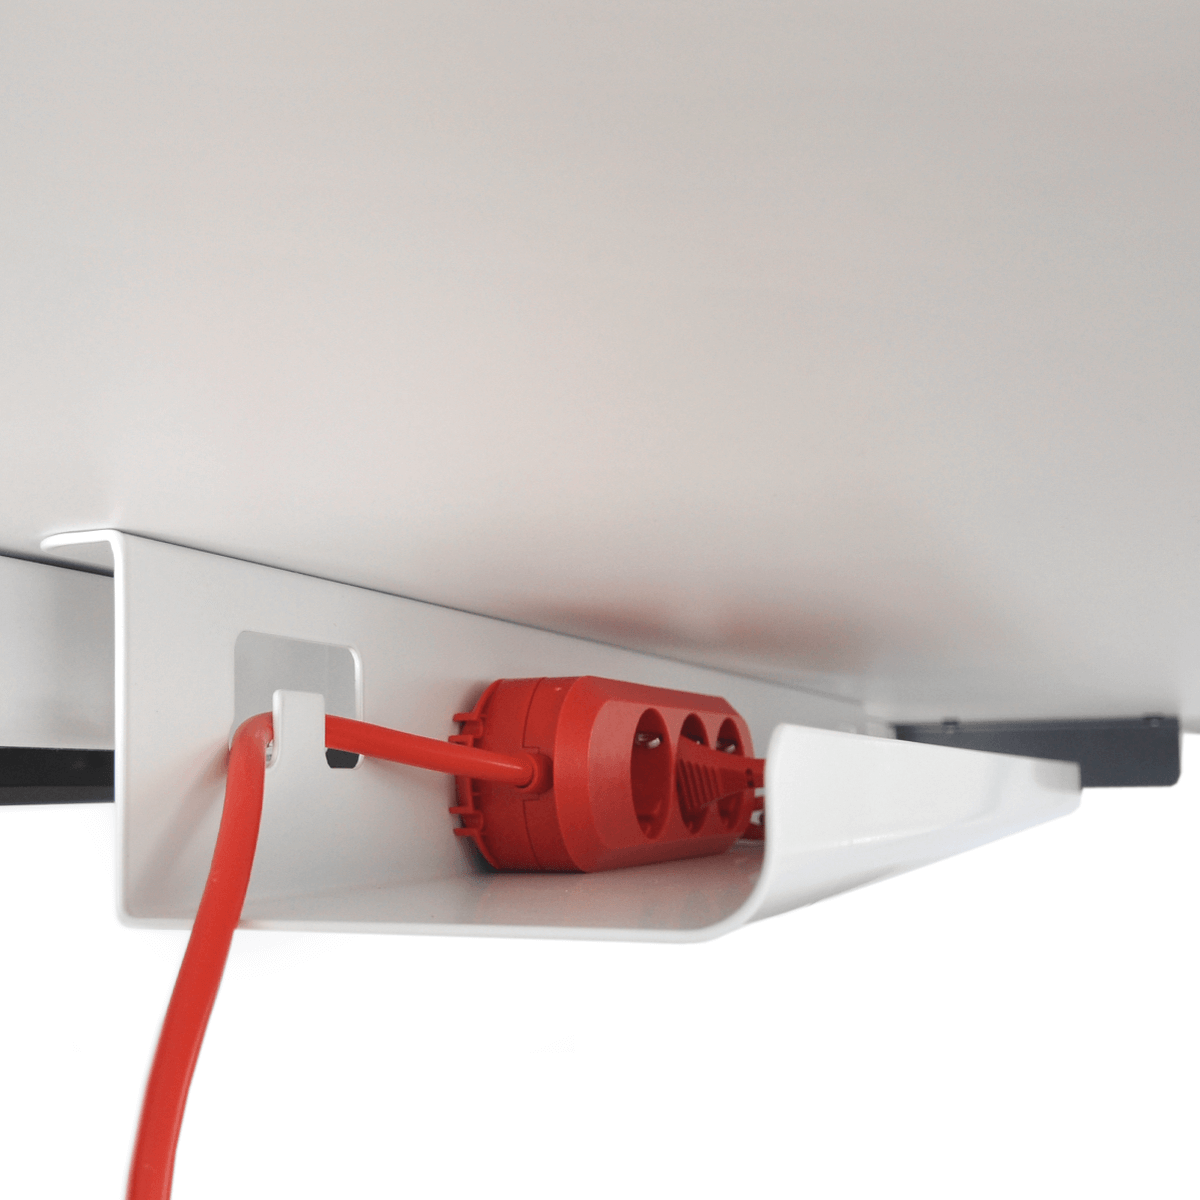 Innenansicht eines feststehenden Kabelkanals mit roter Steckerleiste